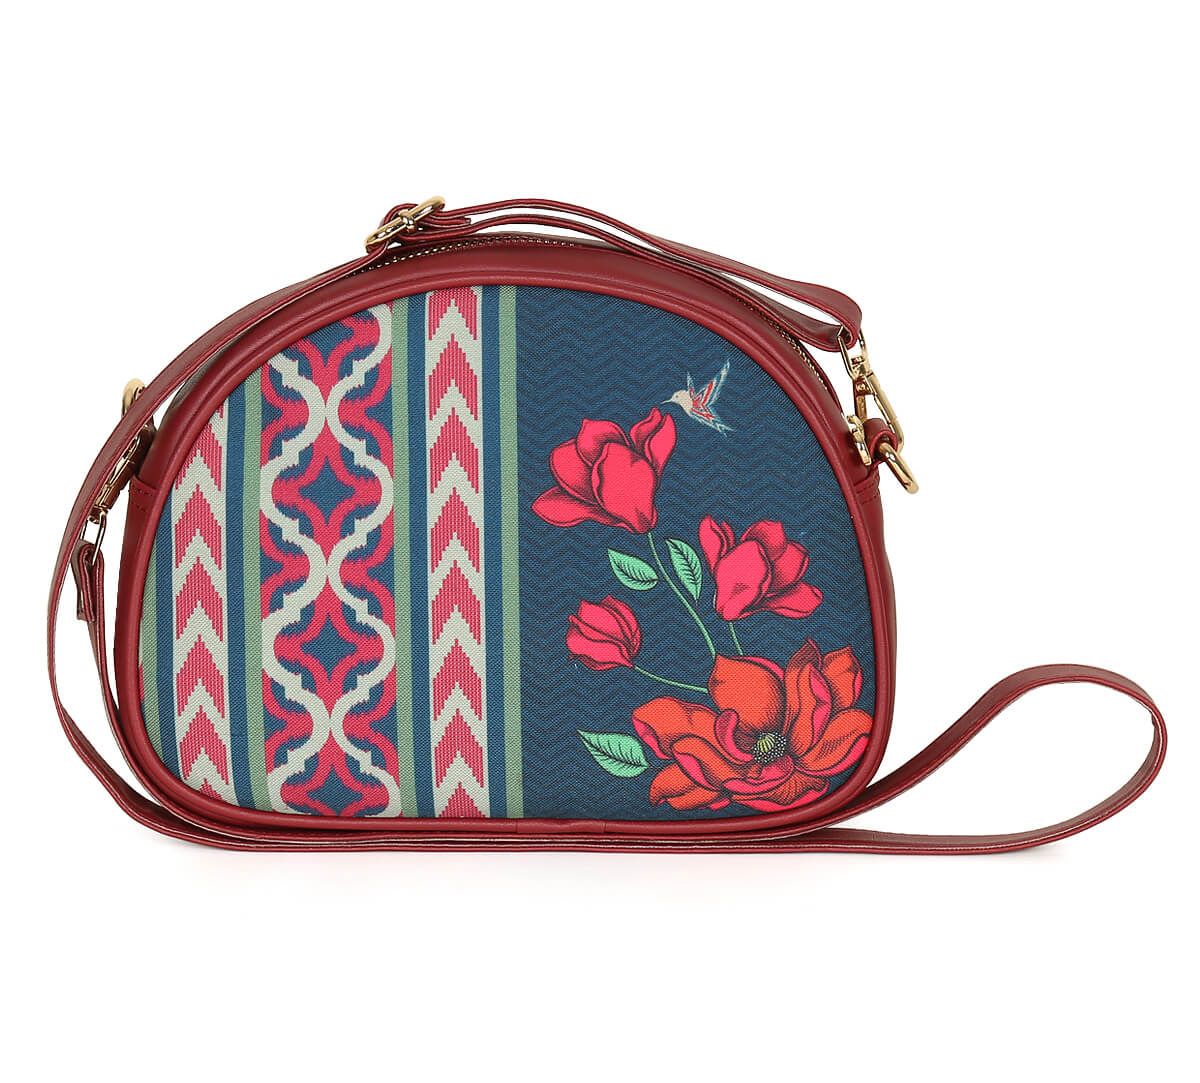 Branded Womens Vertical sling Bag Jute Crossbody handbag shoulder bag purse   Adjustable Vegan Leather Strap